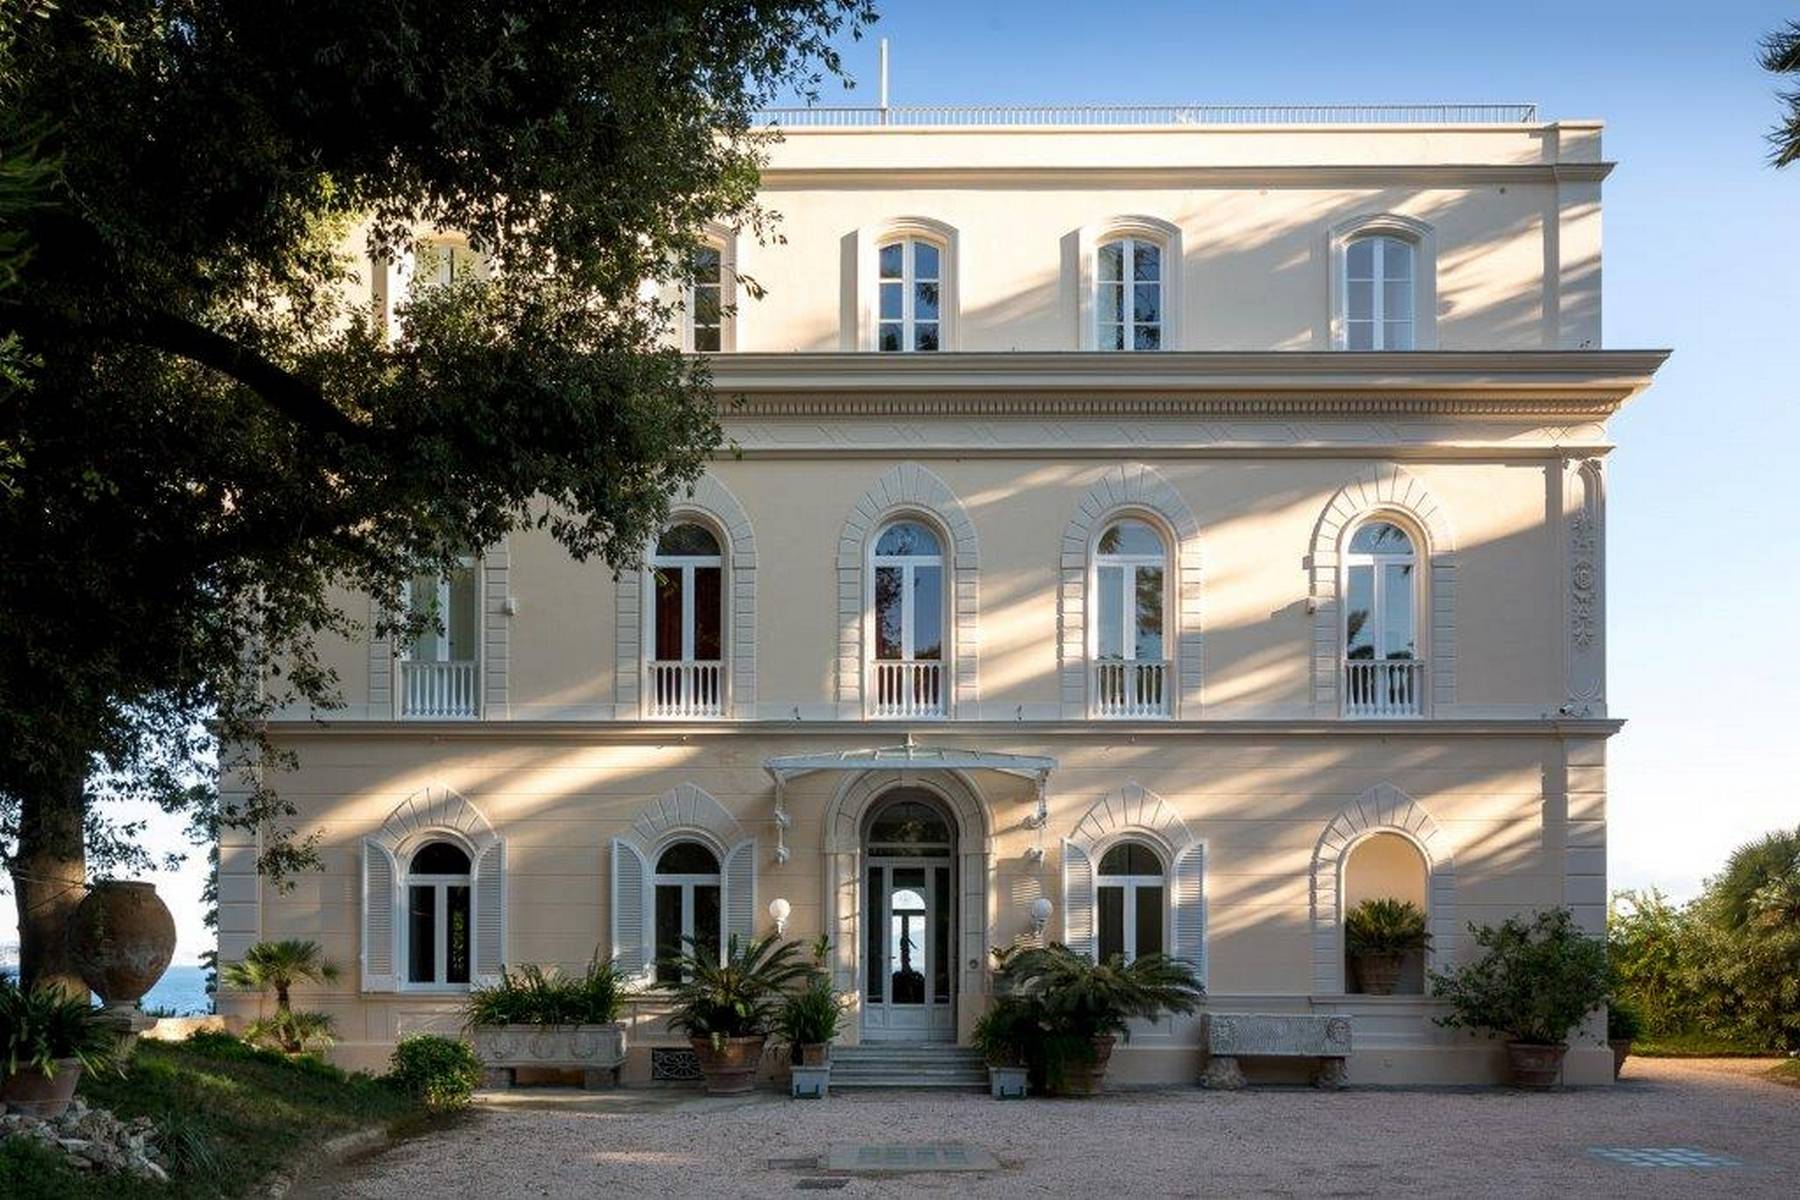 Villa dei Sonetti - A majestic estate suspended over the Mediterranean Sea - 19